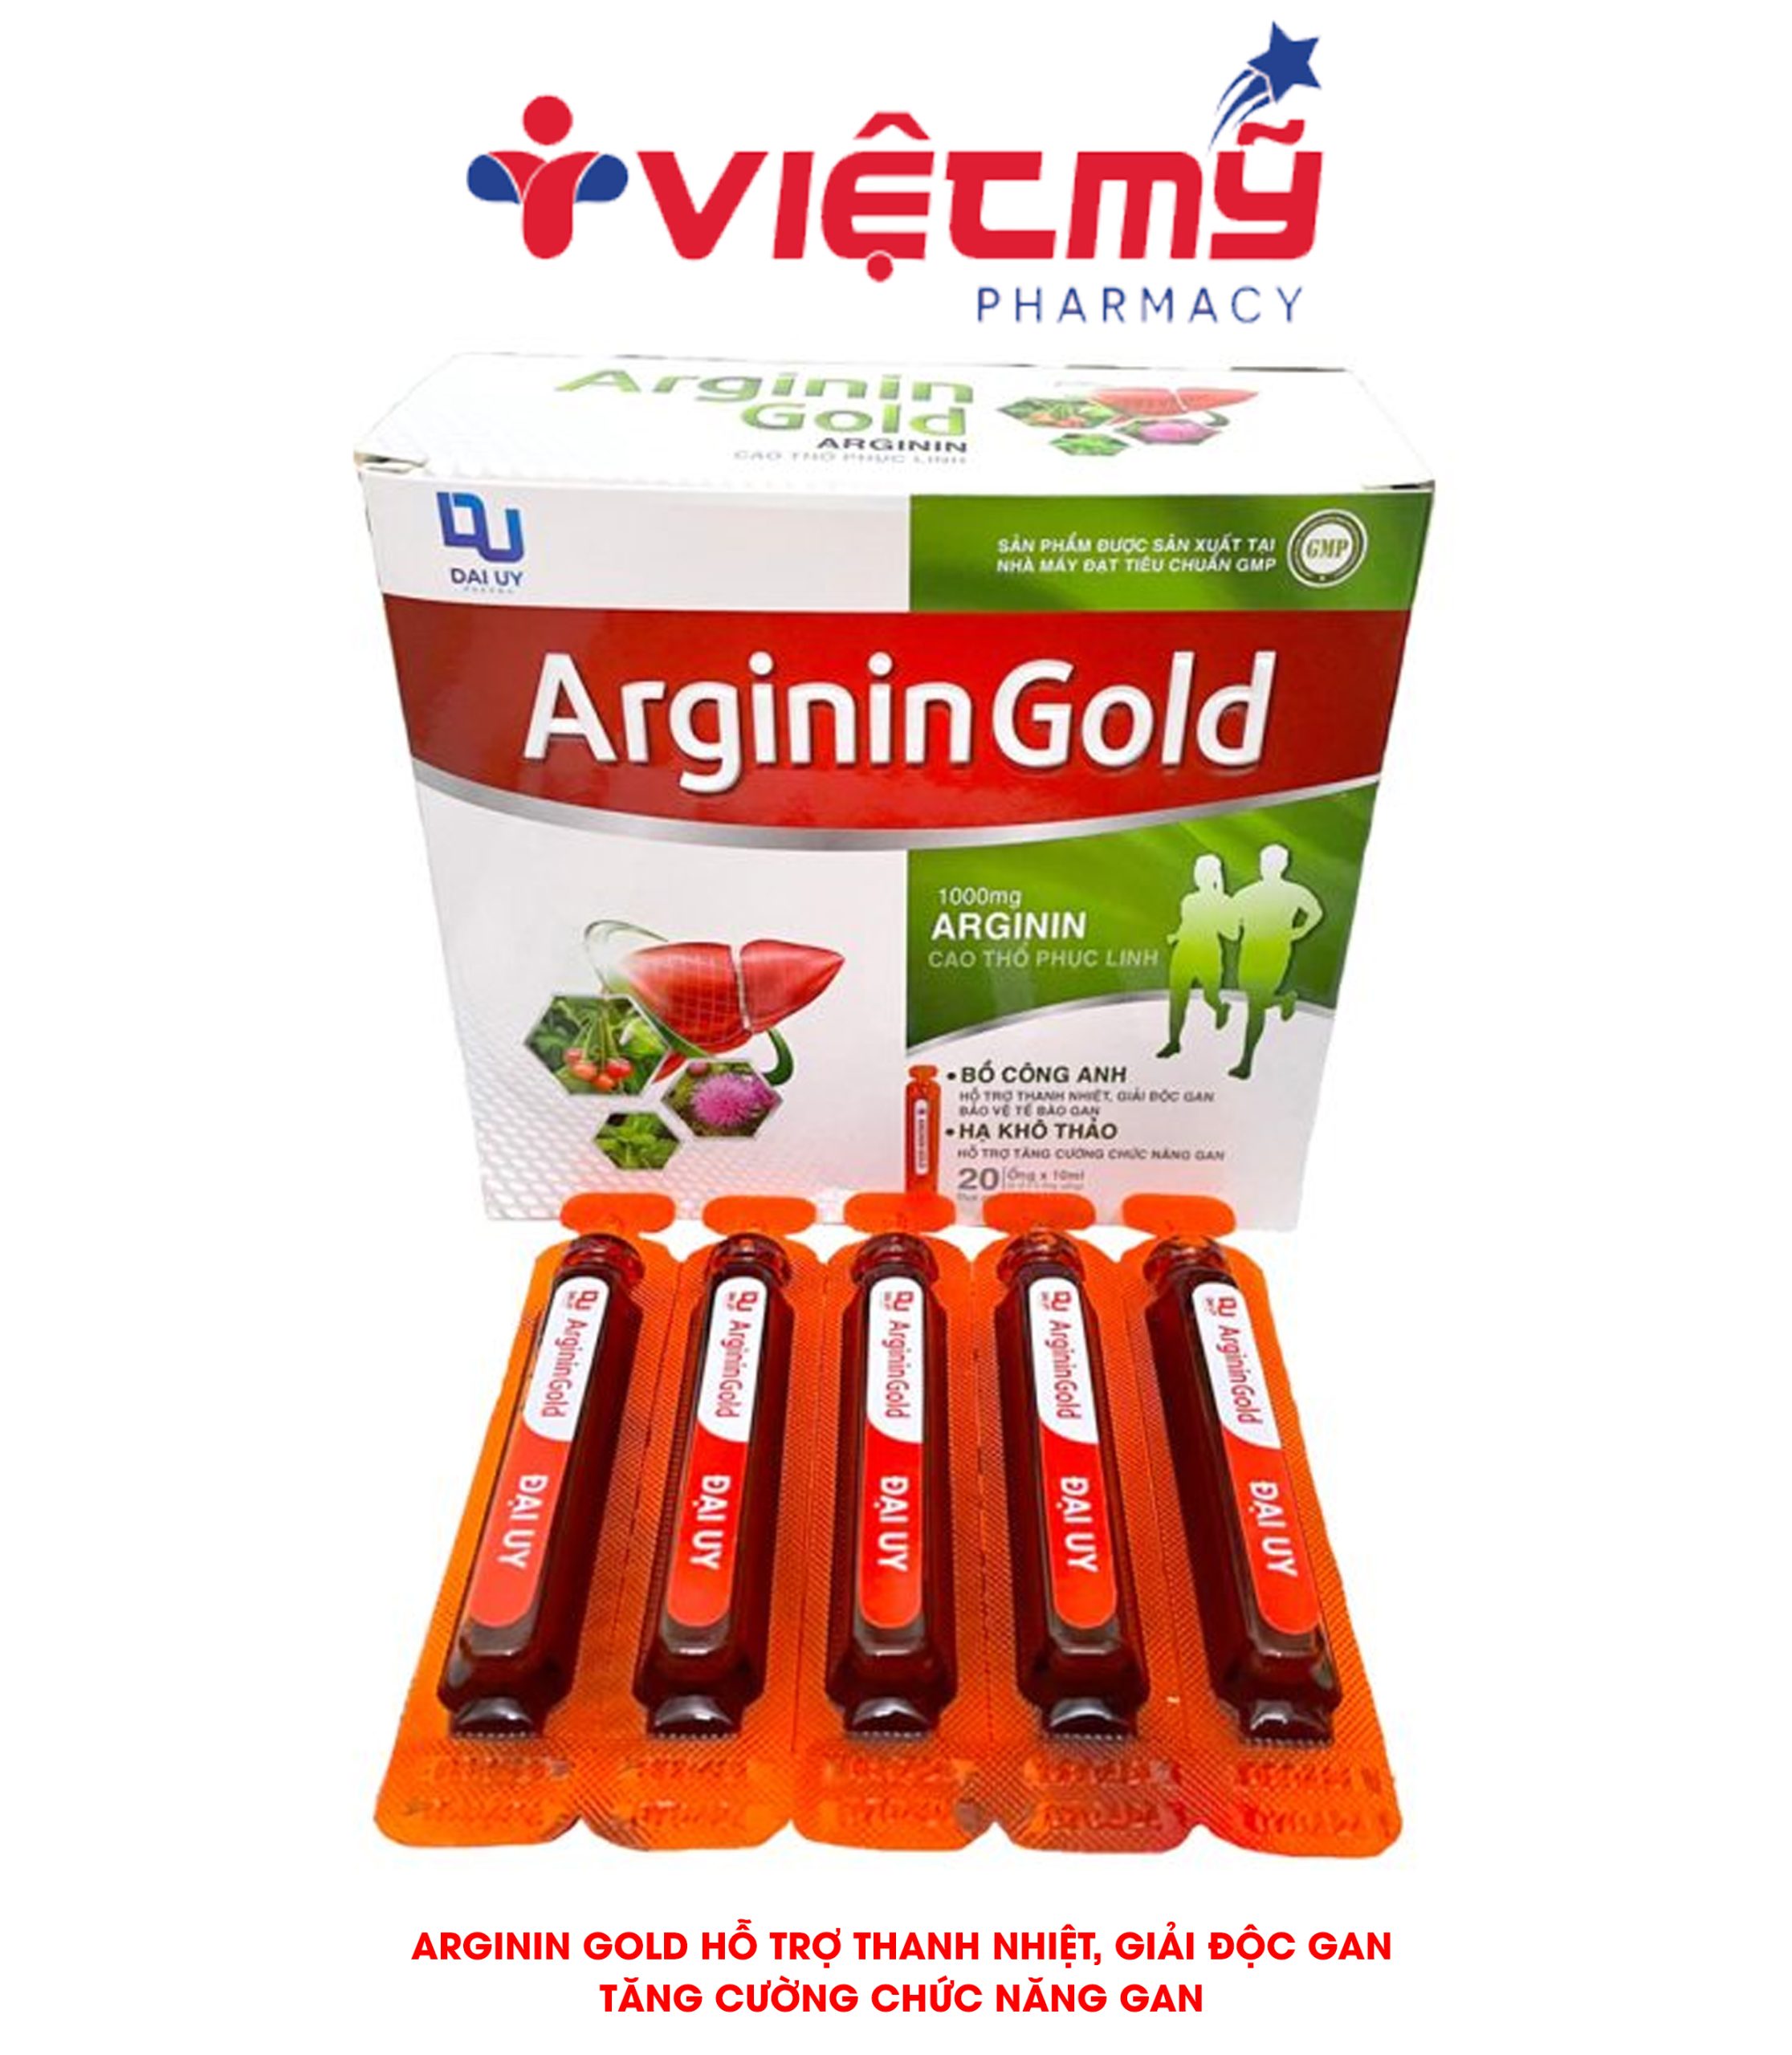 Bổ gan Arginin Gold - Hỗ trợ thanh nhiệt, giải độc gan,tăng cường chức năng gan